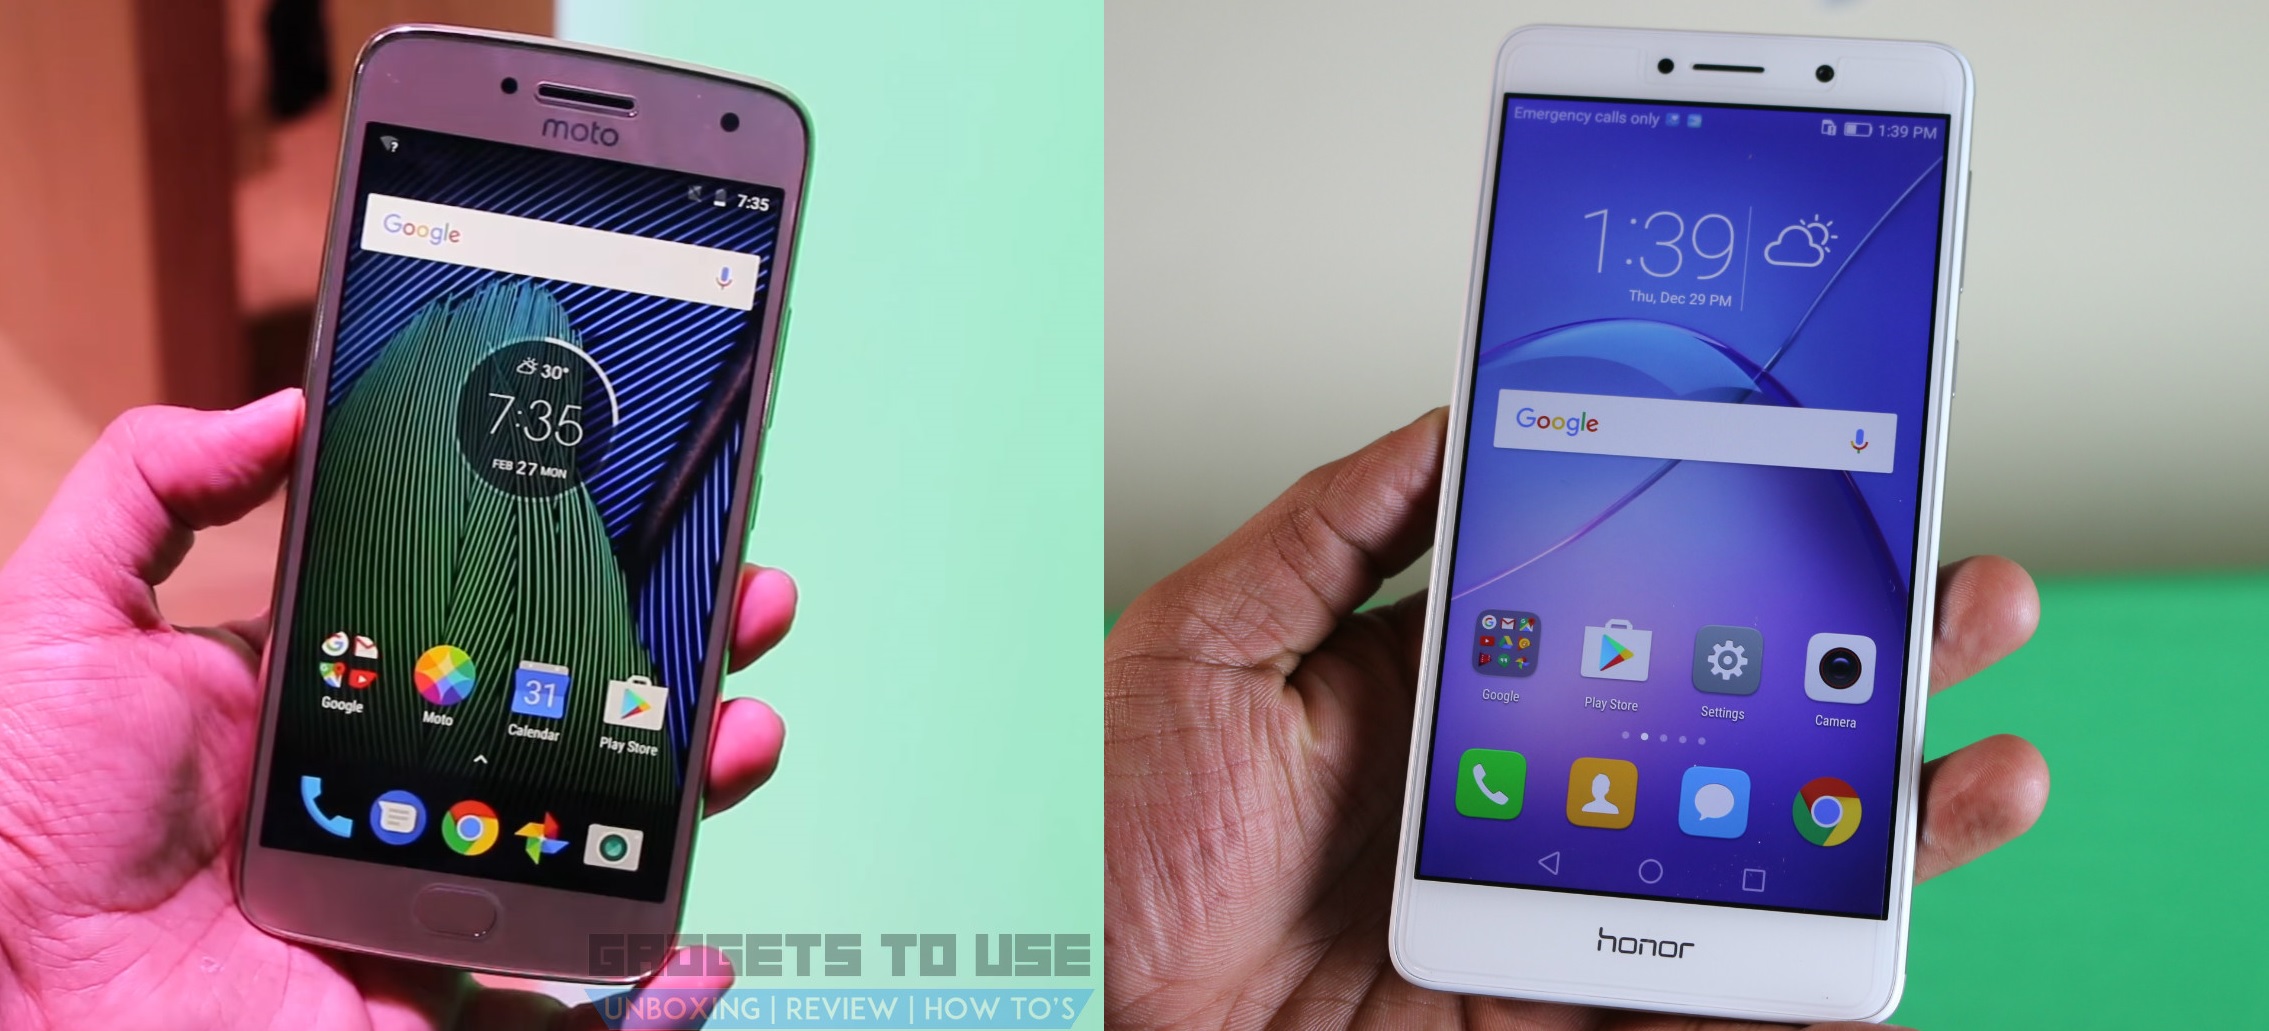 Motorola Moto G5 Plus gegen Huawei Honor 6X Schneller Vergleich